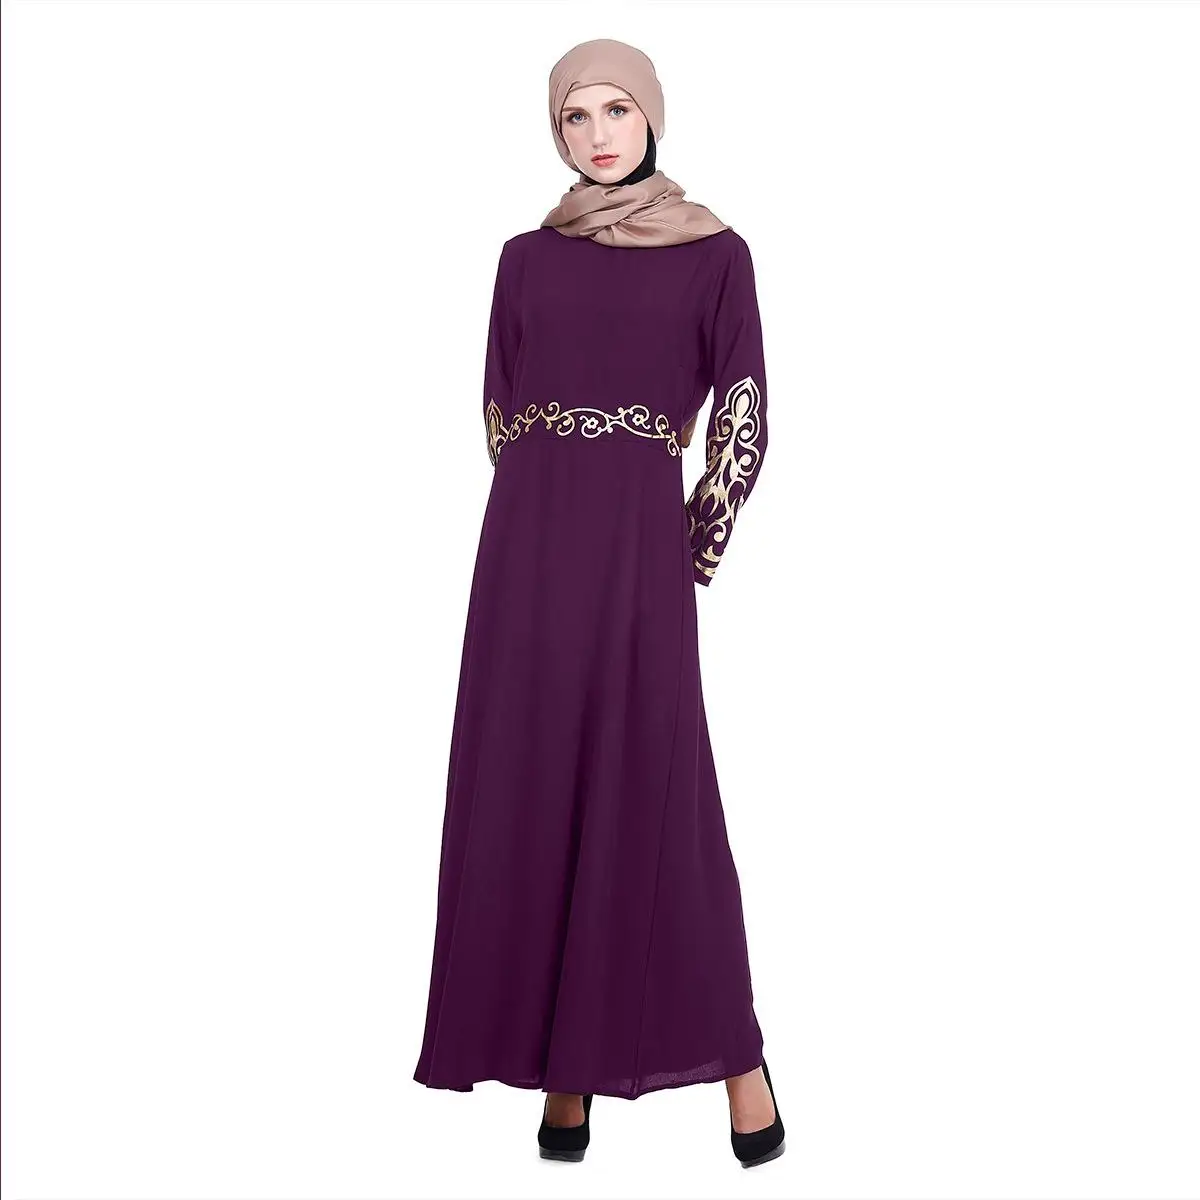 Дубай Длинные Макси Вечерние платья женские мусульманские 2 шт abaya исламский кафтан халат Рамадан арабский комплект одежды Ближний Восток